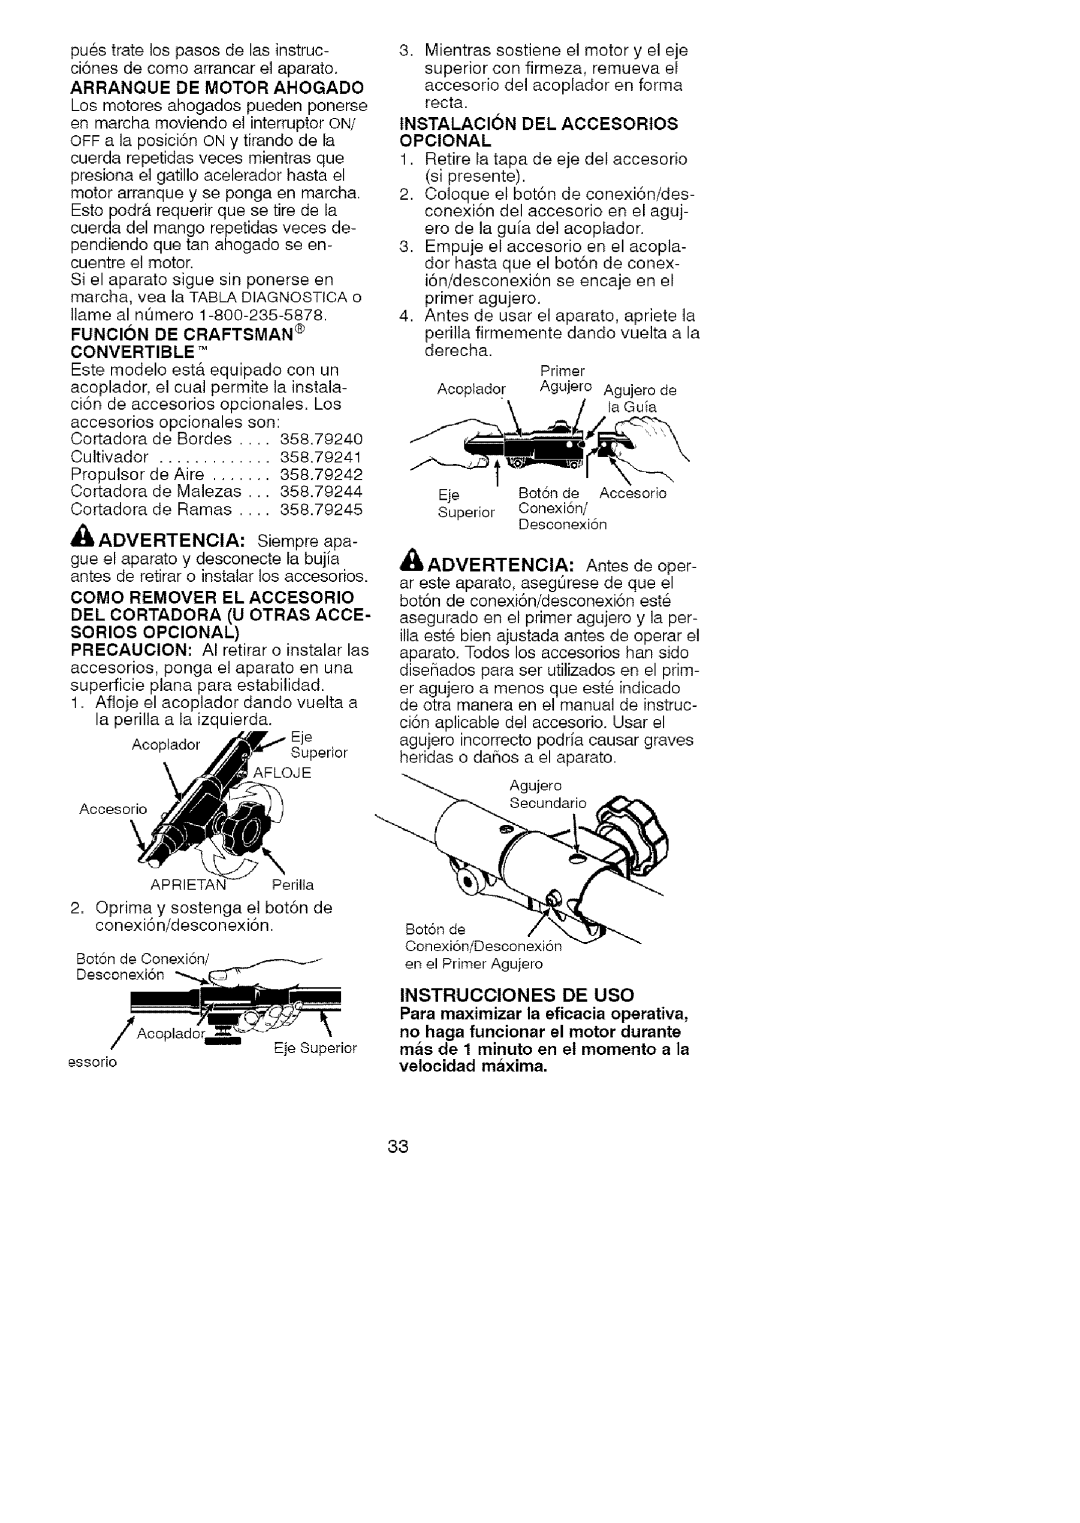 Craftsman 358.79107 manual Arranque De Motor Ahogado, Funcion De Craftsman Convertible, Instalacion Del Accesorios Opcional 